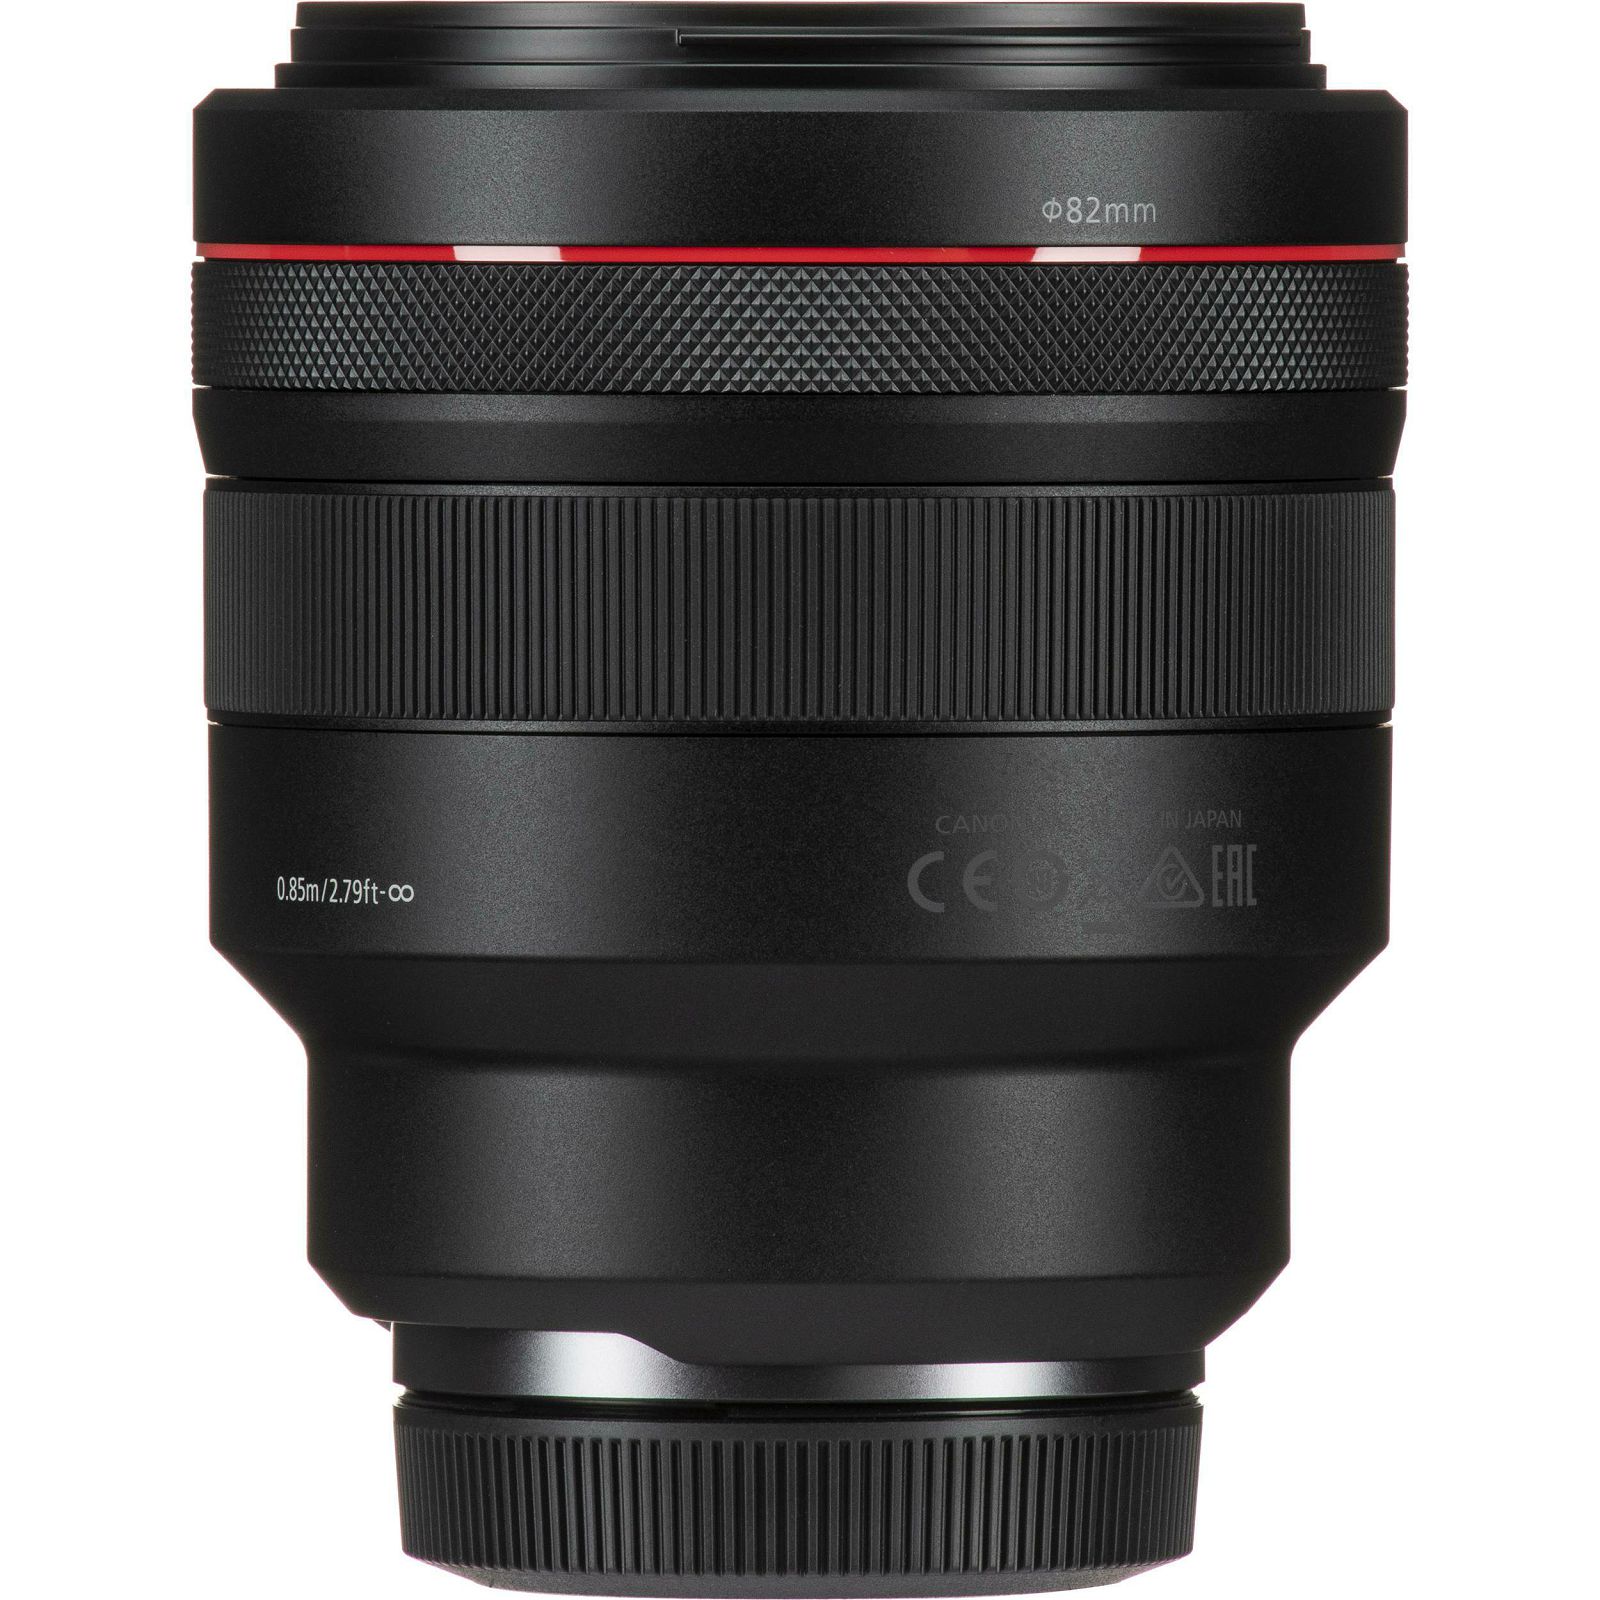 Canon RF 85mm f/1.2 L USM portretni telefoto objektiv 1:1,2 f/1.2L 85 1.2 (3447C005AA)